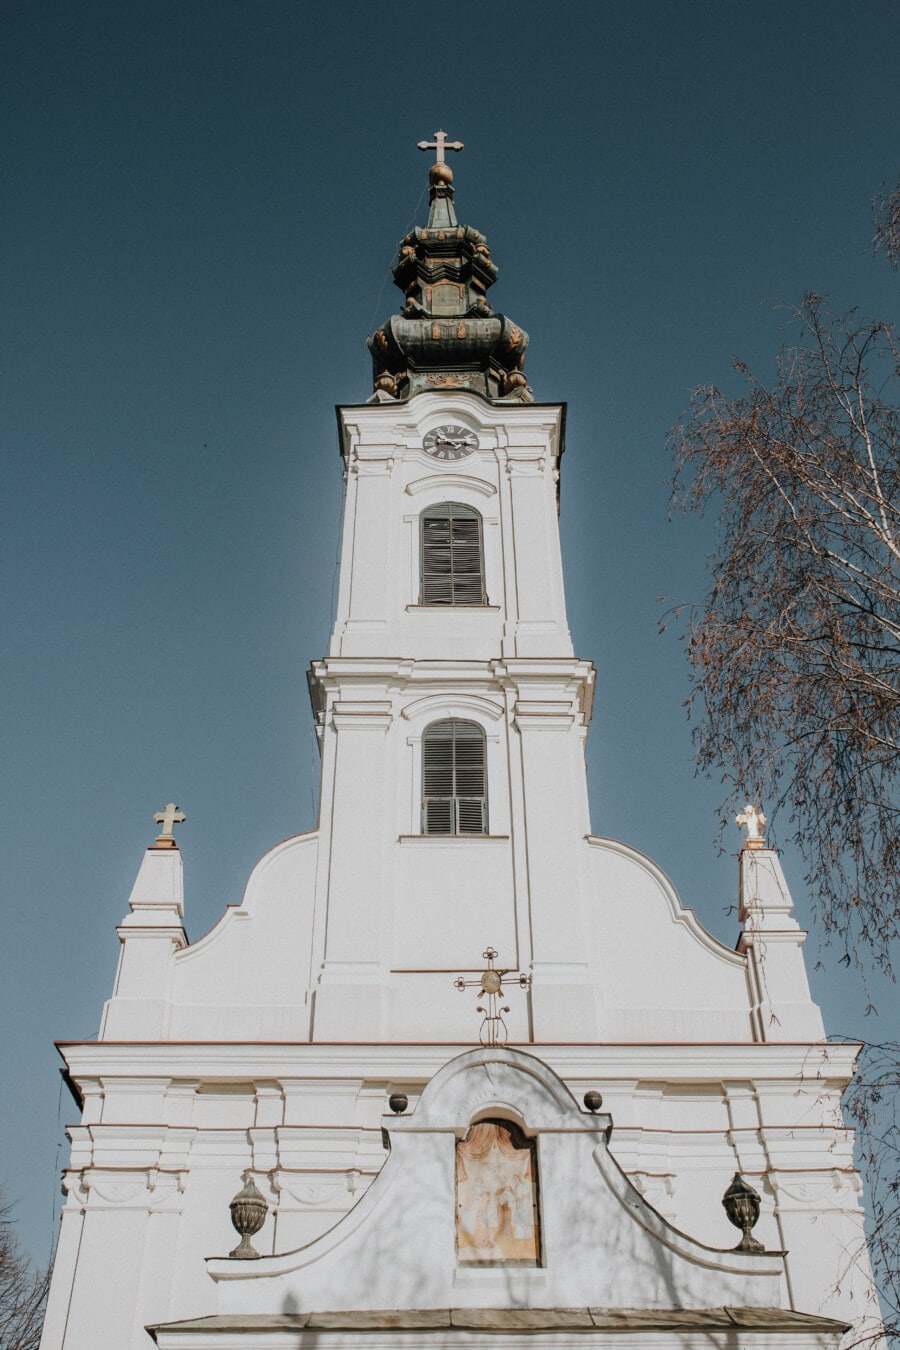 église, Serbie, orthodoxe, blanc, steeple, haute, avant, Croix, religion, bâtiment